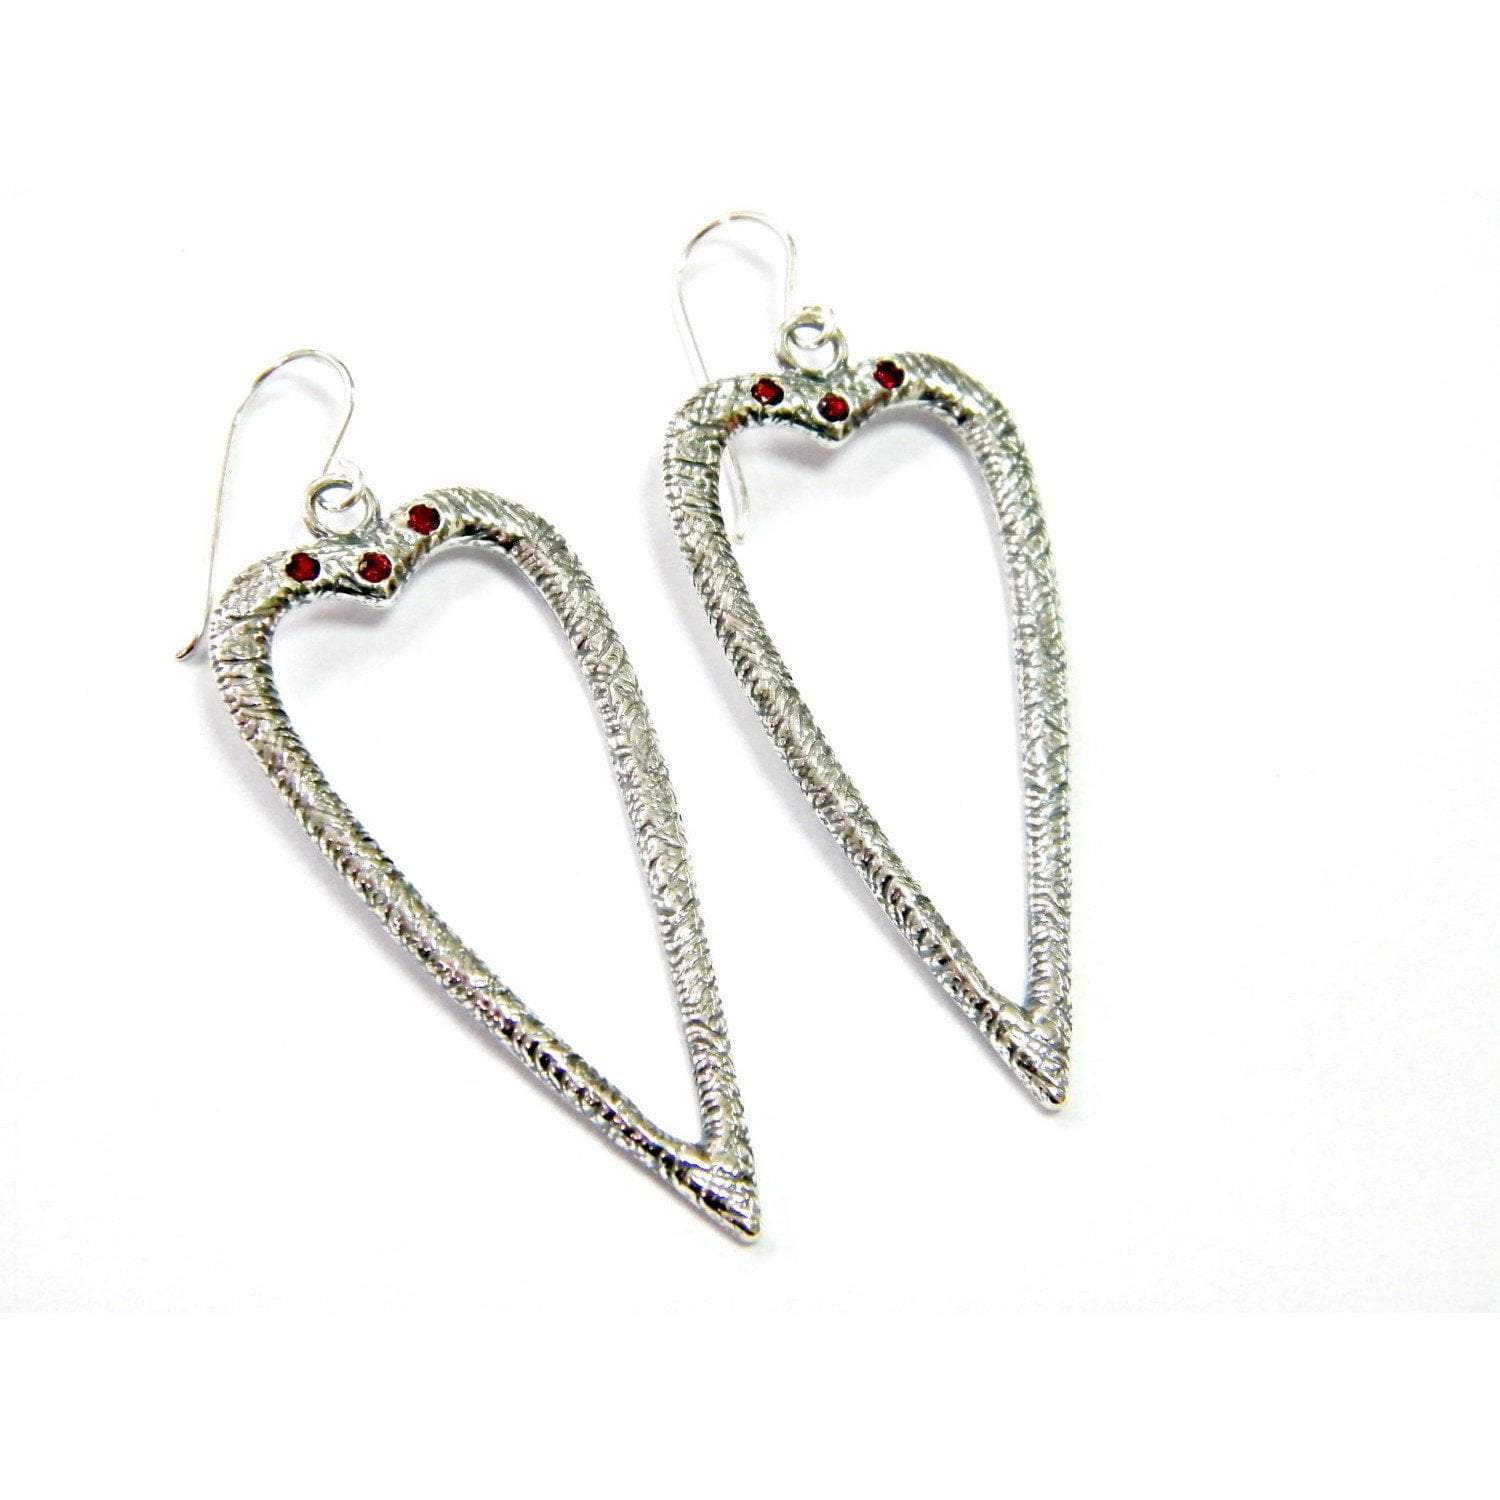 Bluenoemi Jewelry Earrings Sterling Silver Earrings for Woman dangling earrings with zircons,  Heart Romantic Dangling Earrings